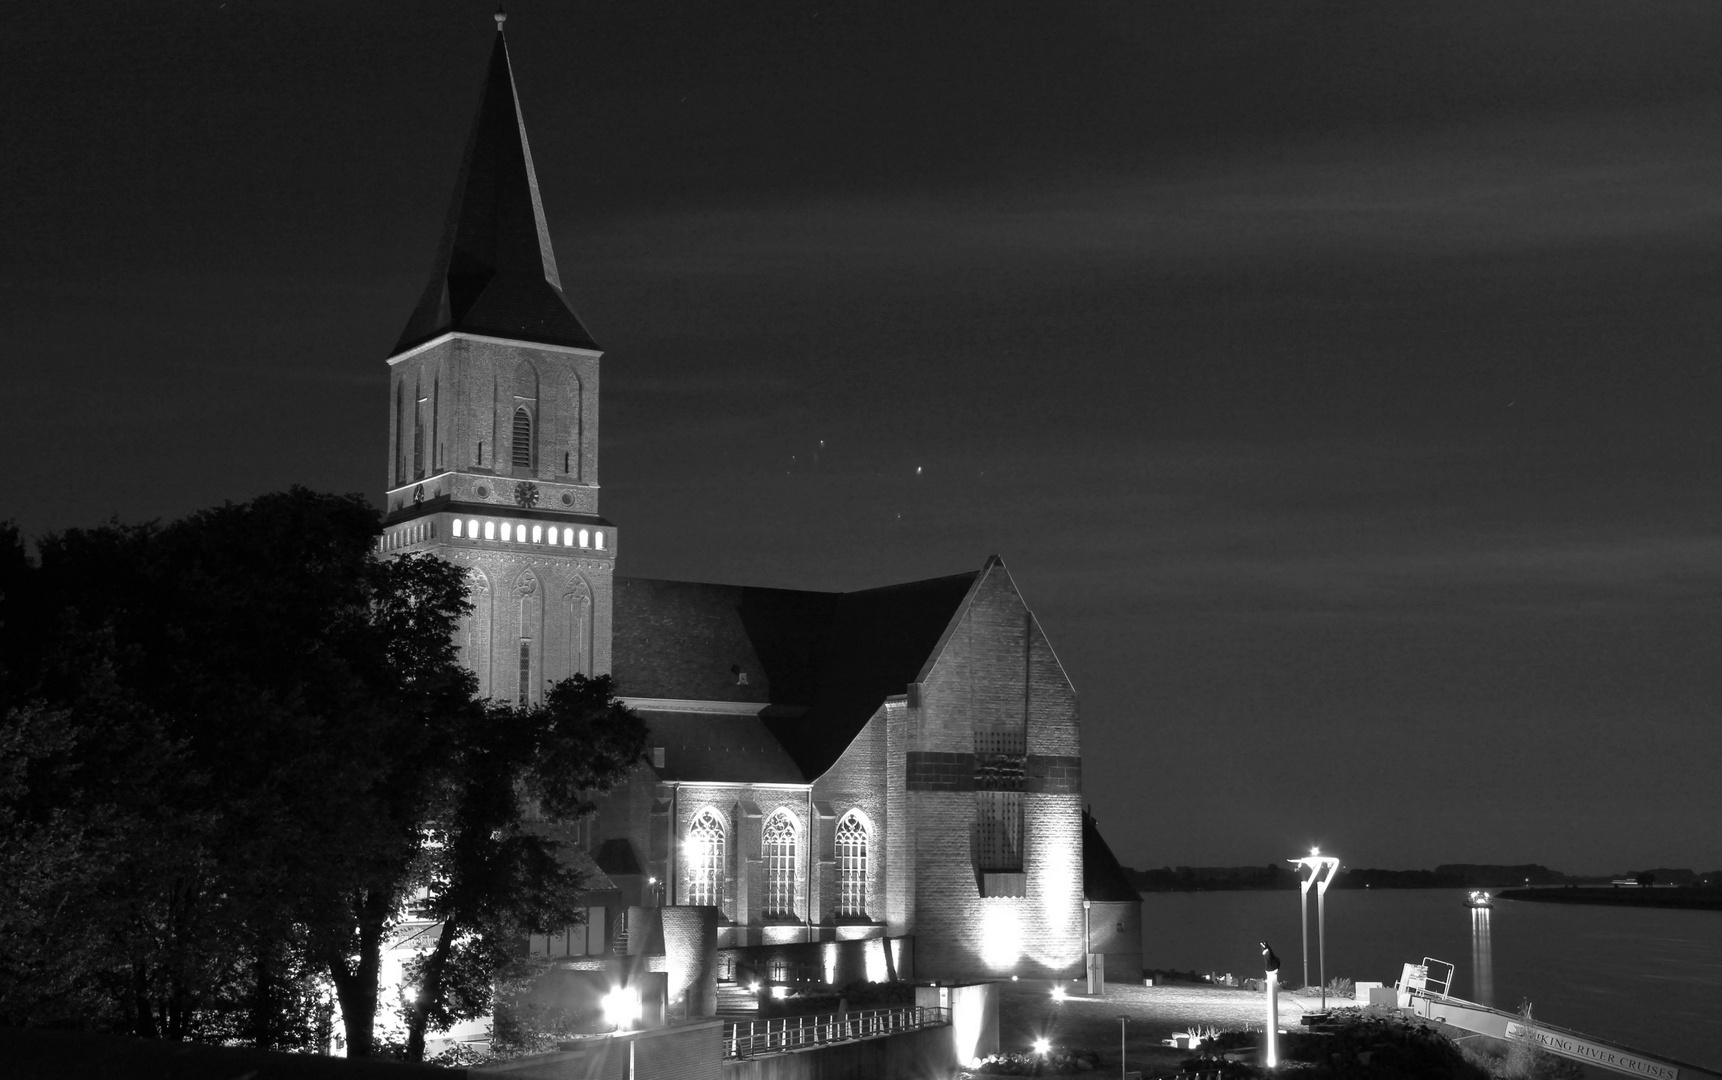 Sankt Martini Kirche in Emmerich am Rhein s/w